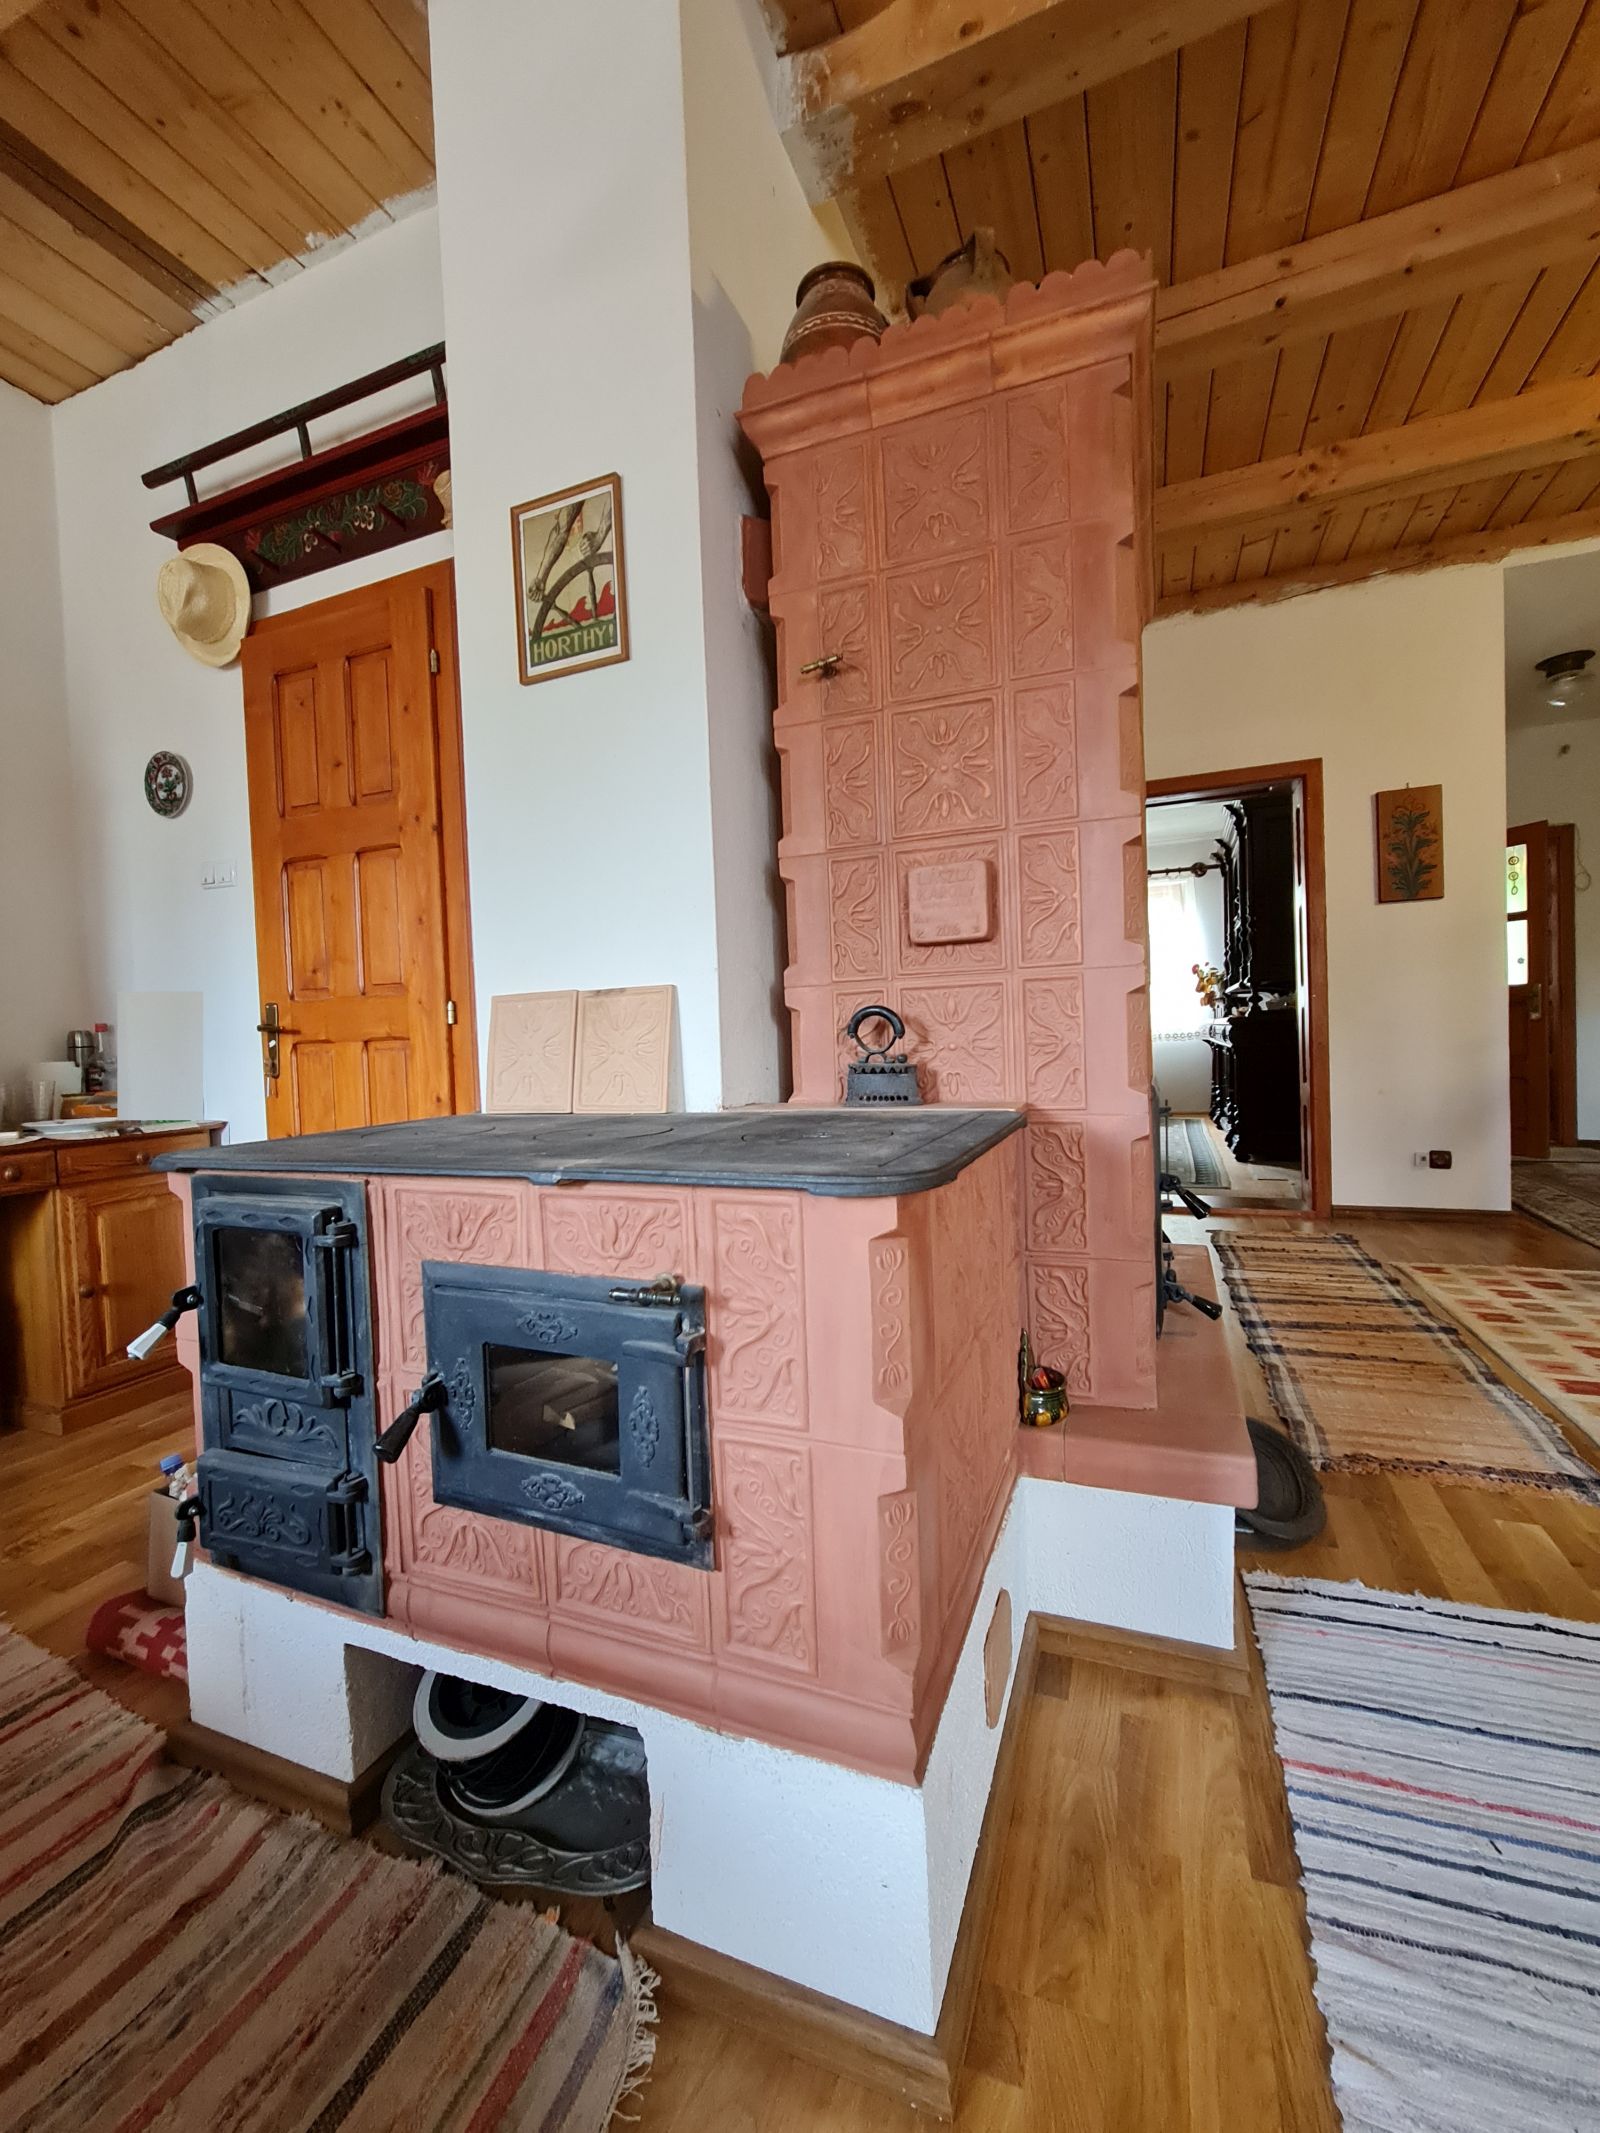 Către bucătărie soba are o extensie cu un loc de gătit care funcționează cu lemne.